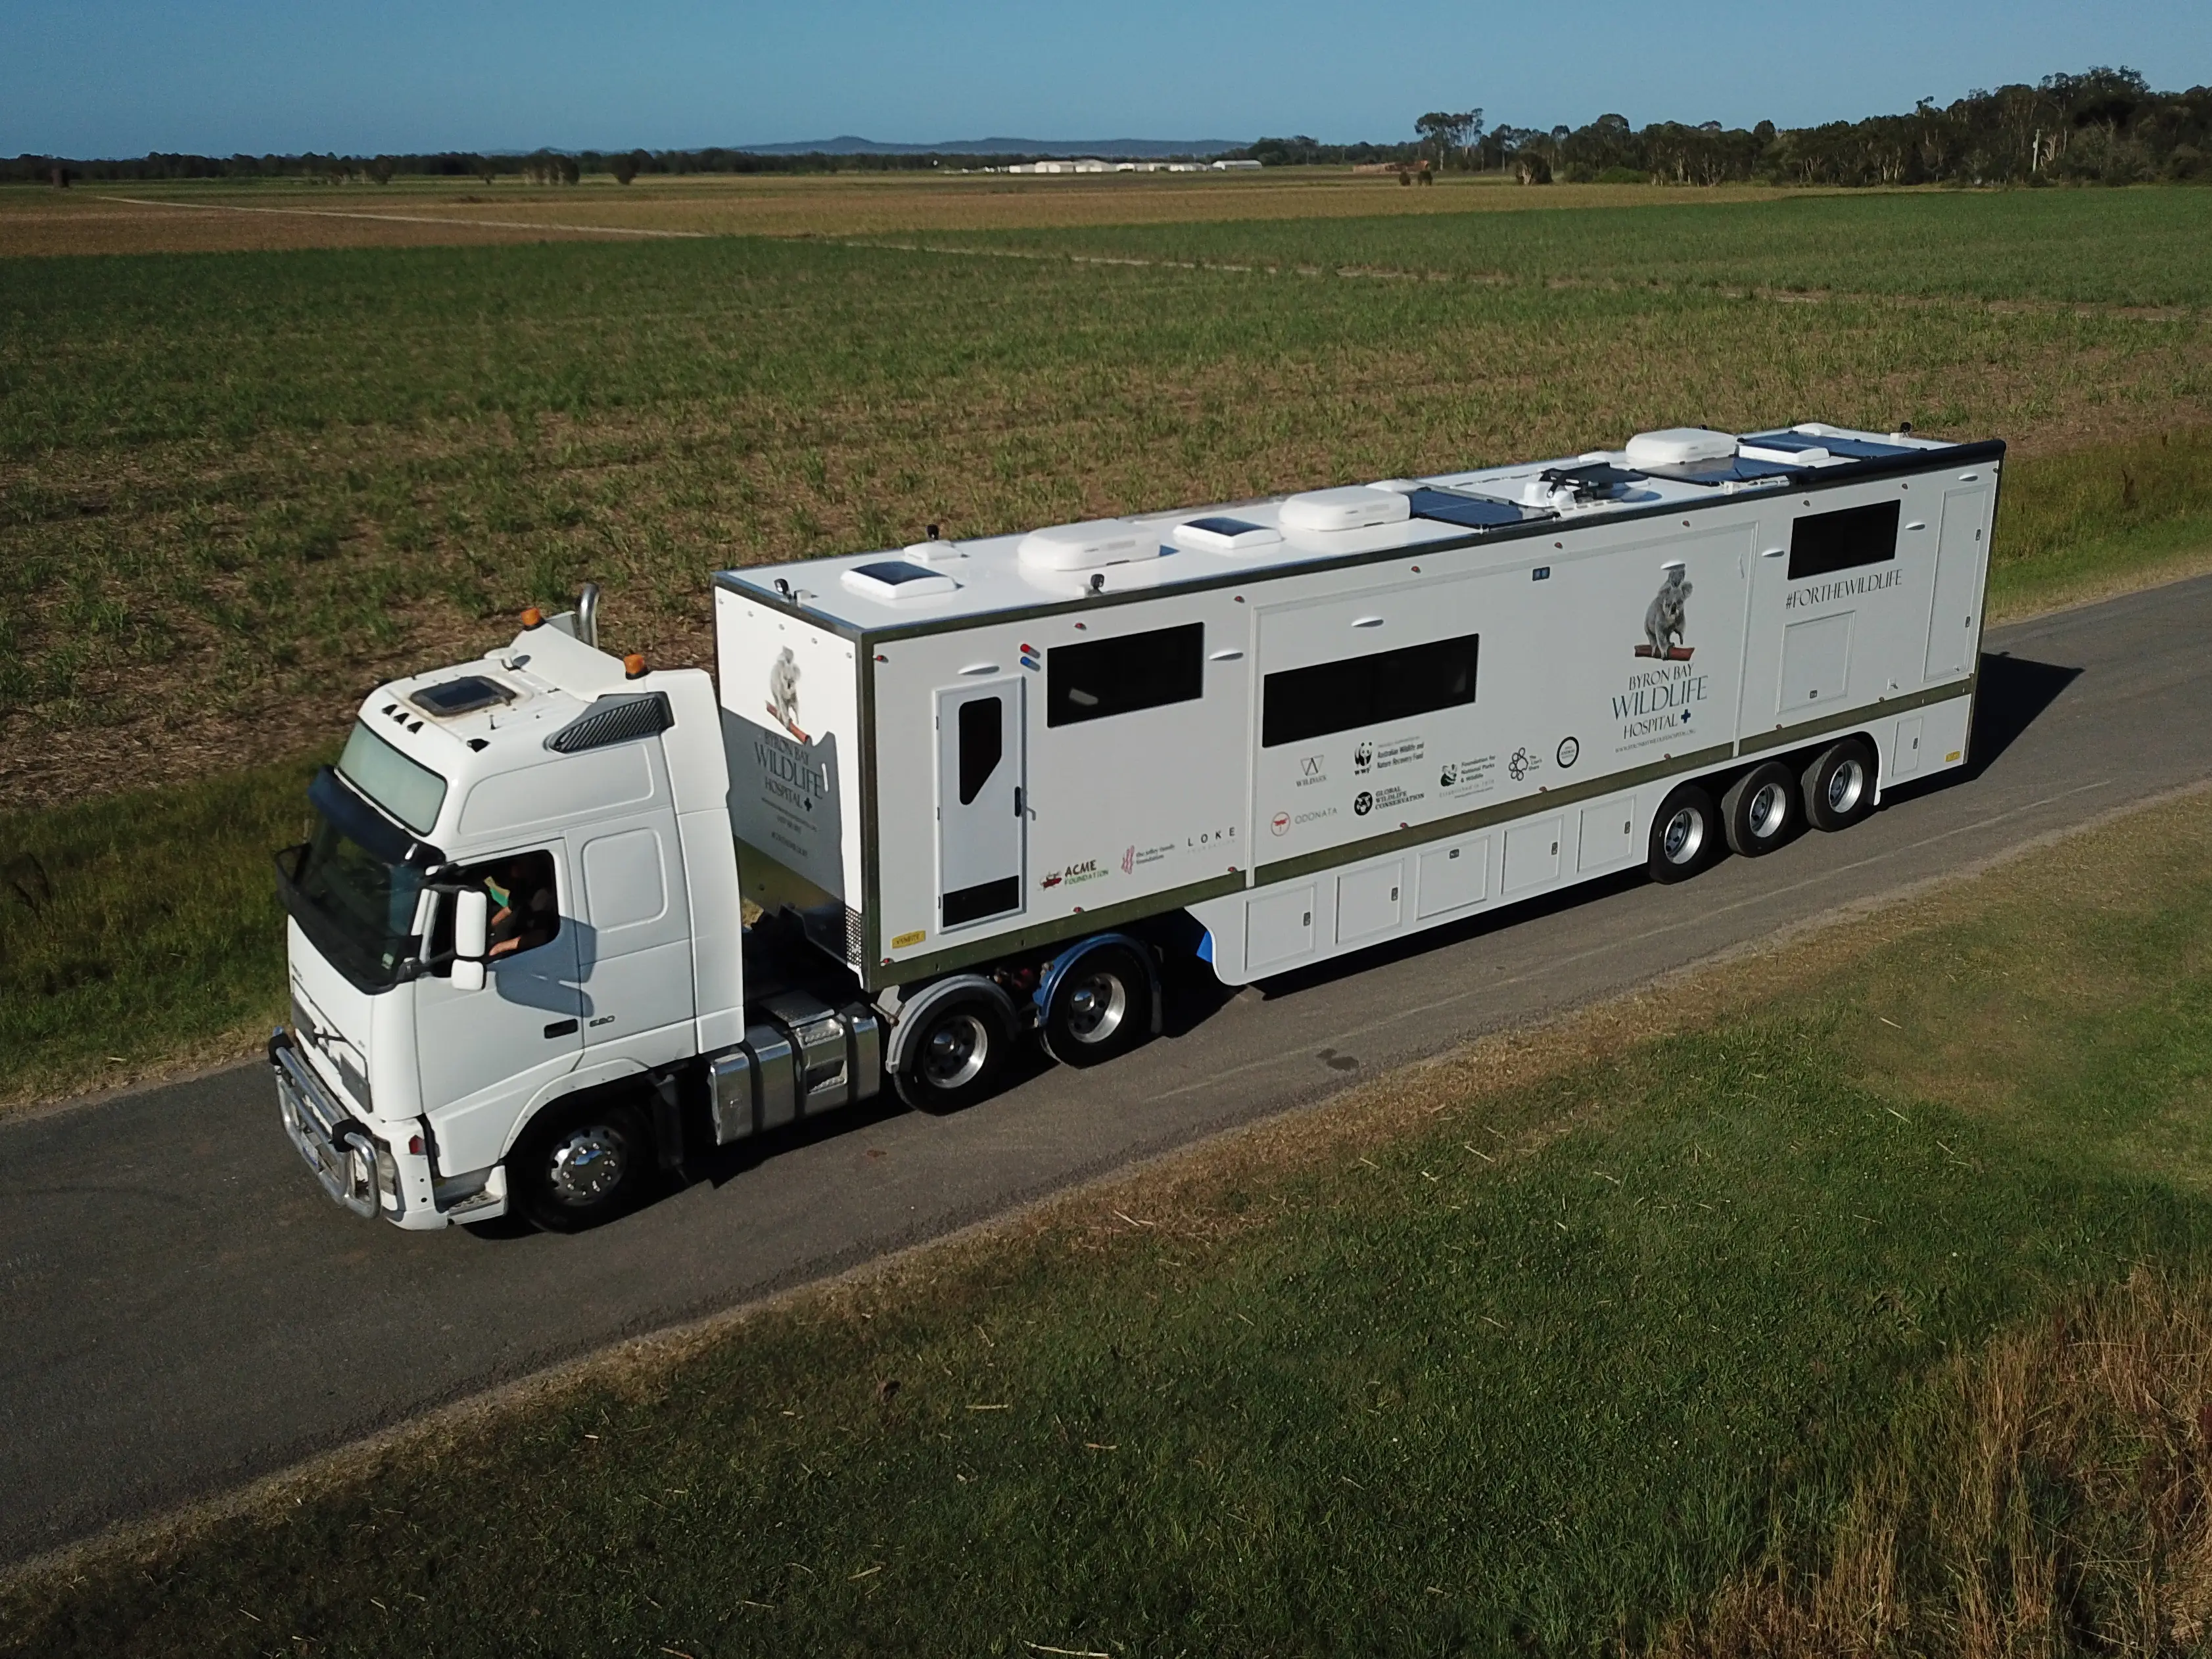 In Australia è operativo il primo ospedale mobile, costruito sul semirimorchio di un tir, dedicato alle cure degli animali selvatici feriti